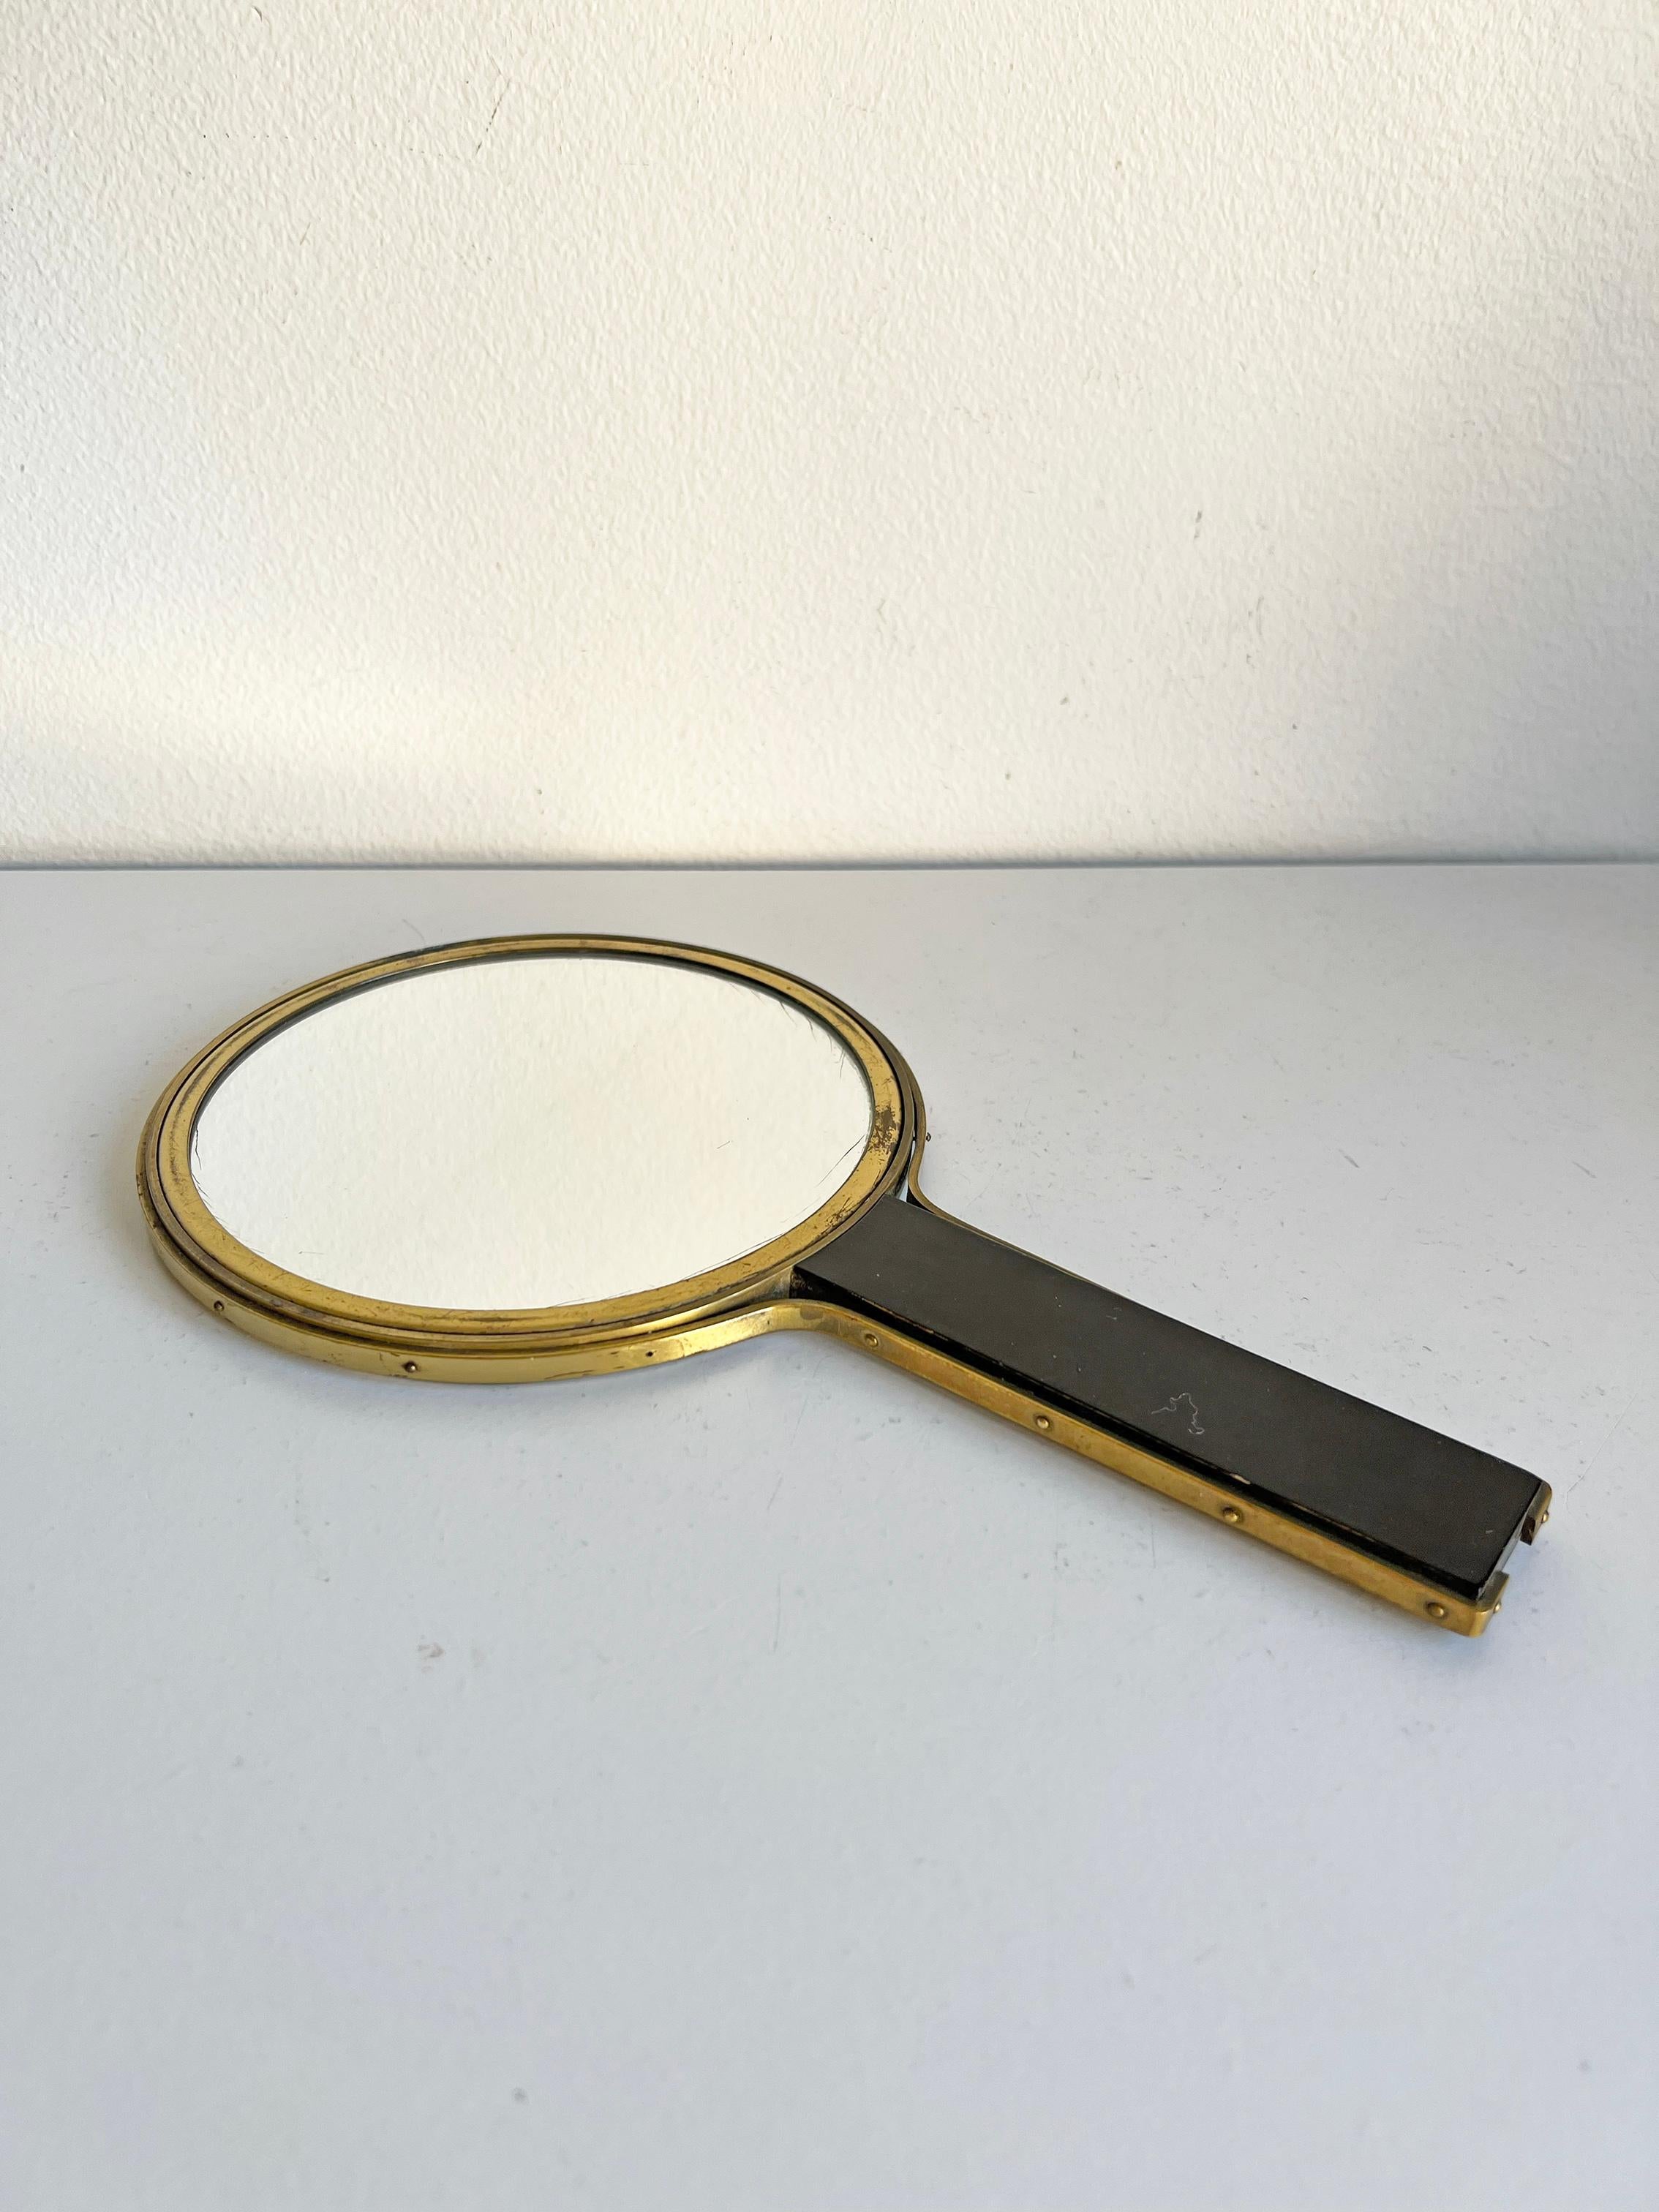 Sehr seltener, zweiseitiger Spiegel aus Messing und Holz, zugeschrieben Ivar Ålenius-Björk für Ystad-Metall - 1939. 
Guter Vintage-Zustand, alters- und gebrauchsbedingte Abnutzung. Altersgemäße Patina/Abnutzung an den Metallteilen. Spiegel selbst